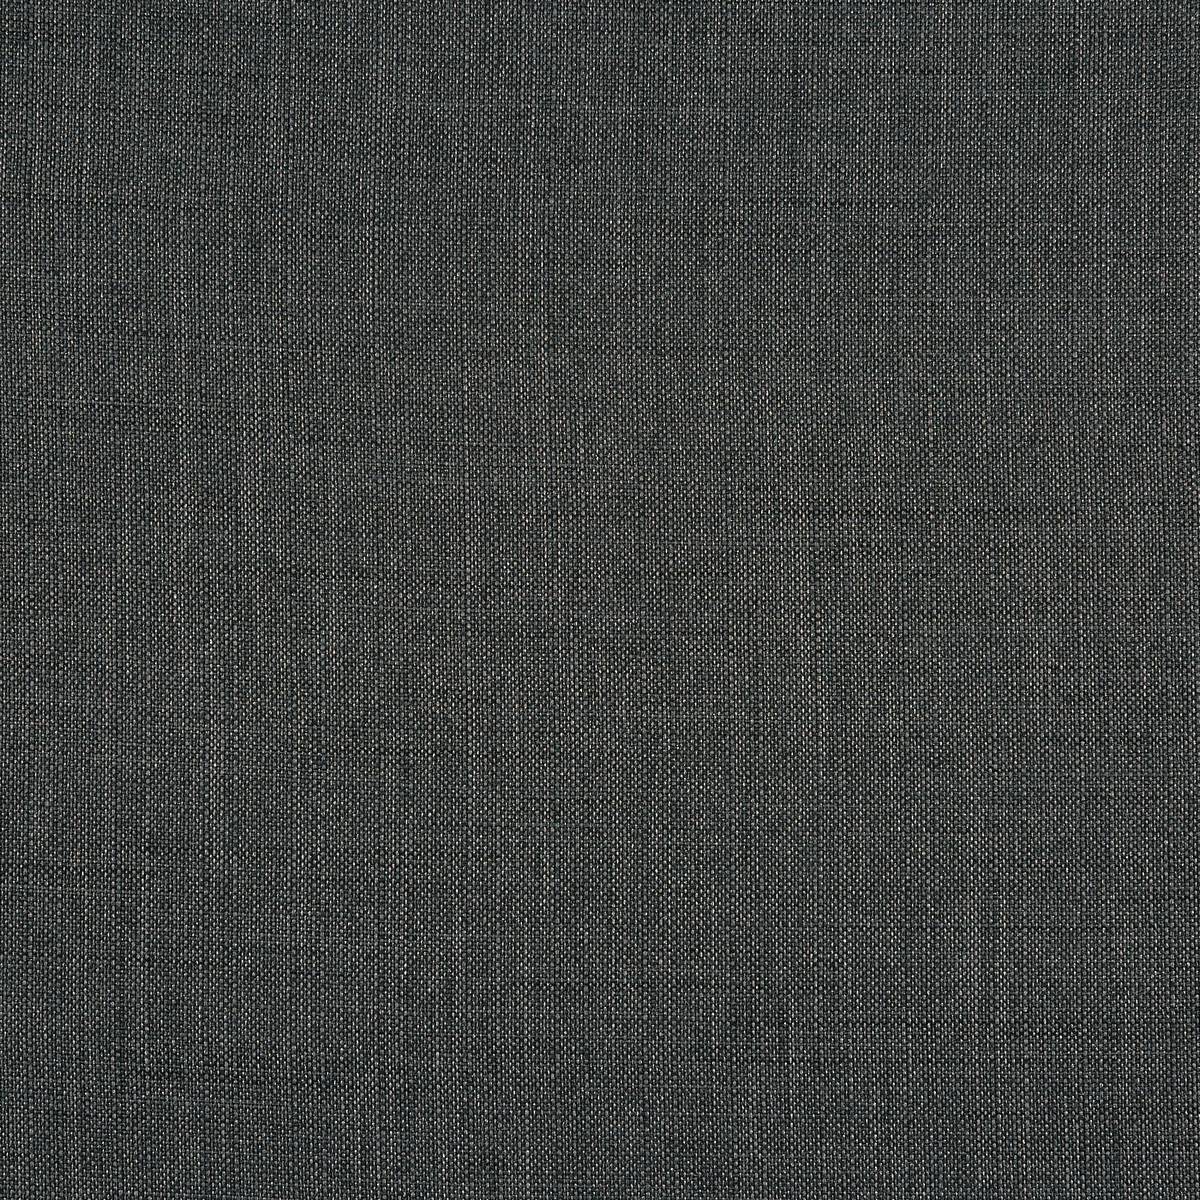 Grosvenor Graphite Fabric by Prestigious Textiles